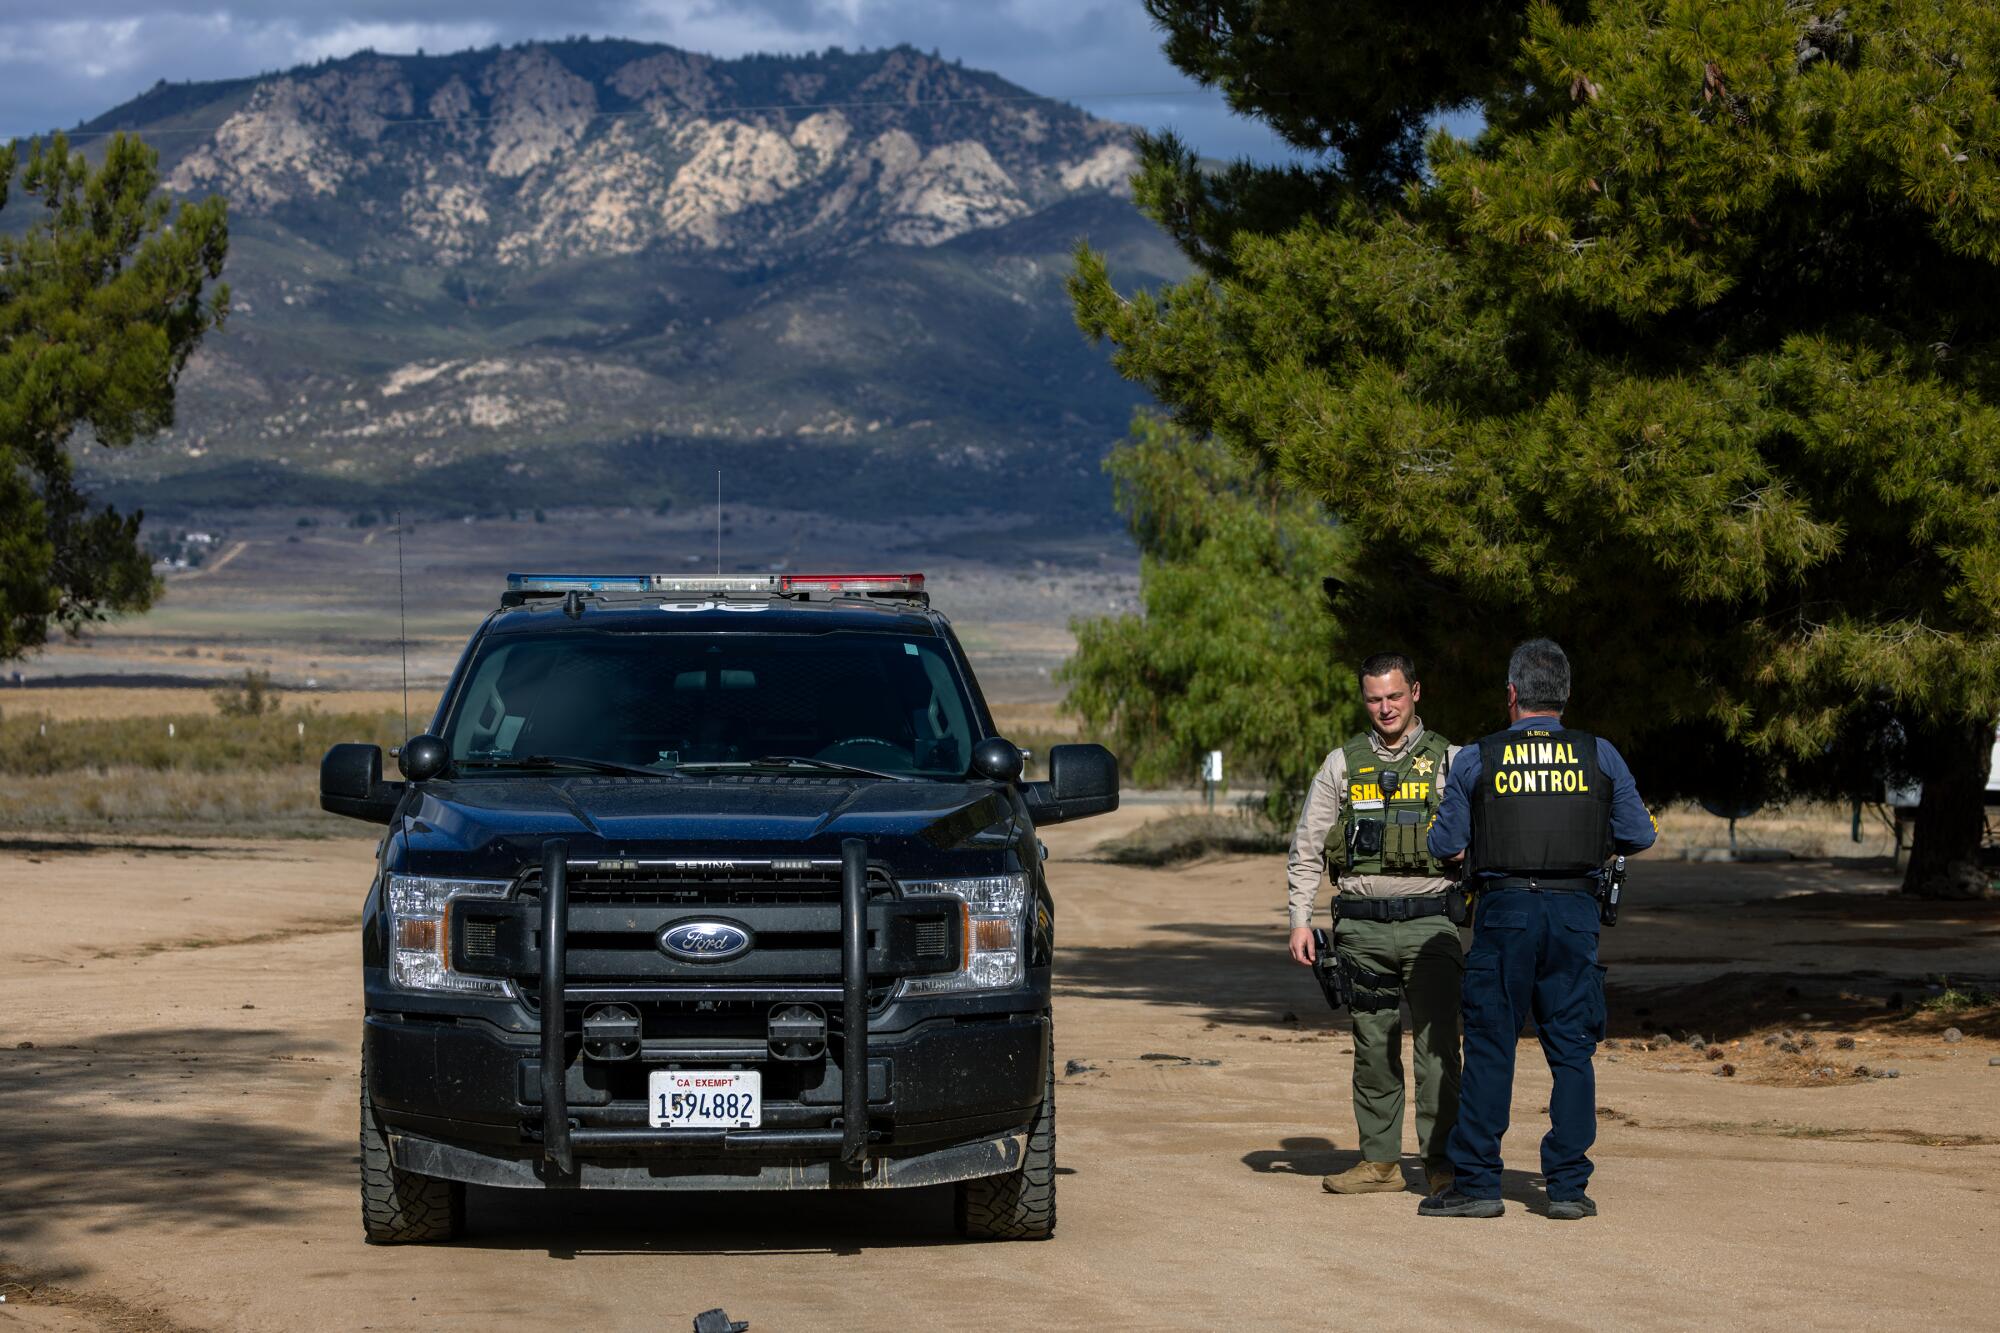 Ein Tierschutzbeamter und ein Stellvertreter des Sheriffs stehen neben einem Streifenwagen, während im Hintergrund ein Berg aufsteigt.